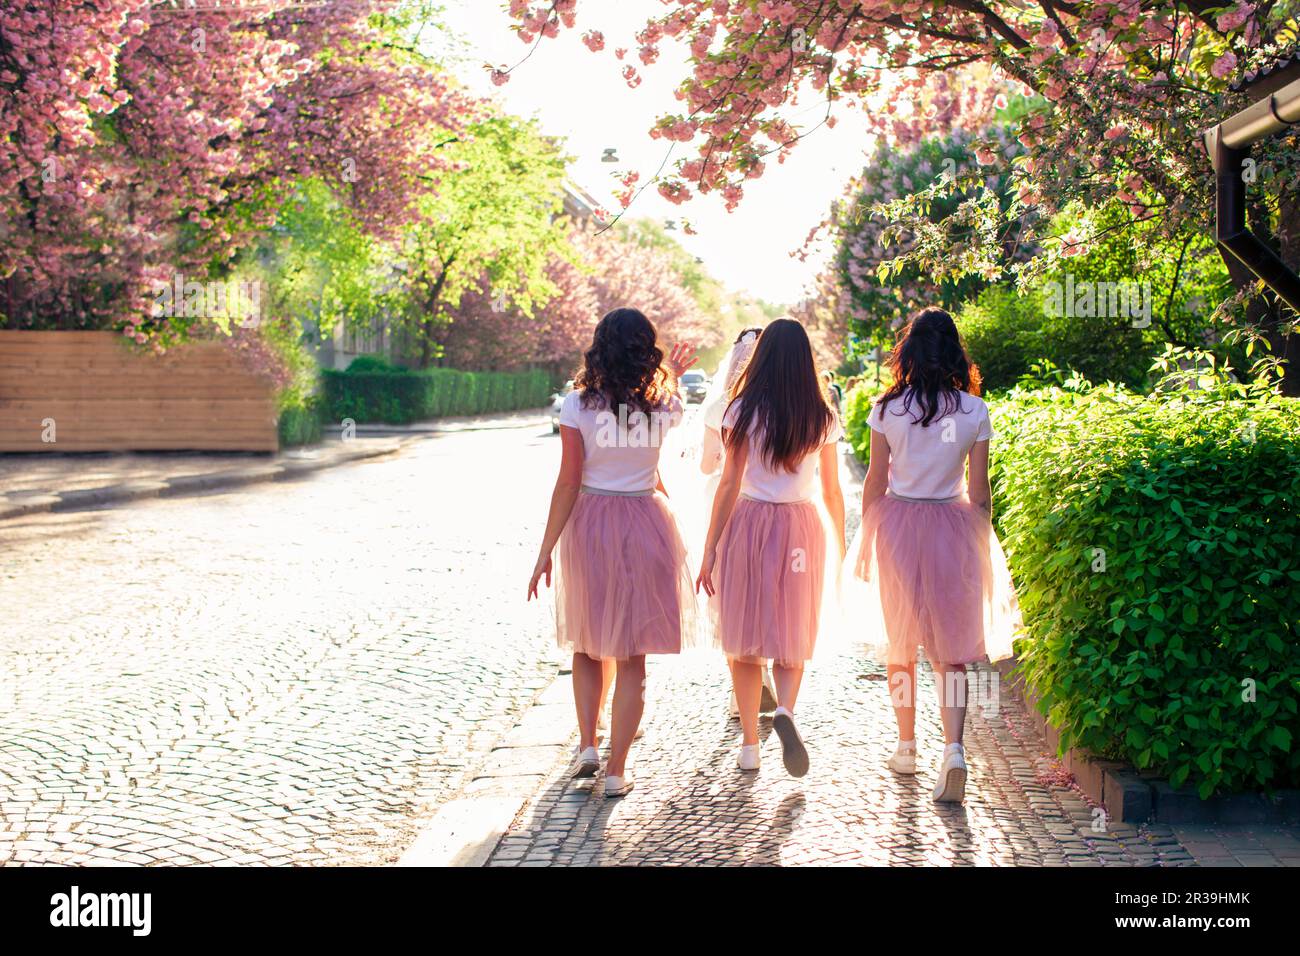 Groupe de copines marchant dans la rue de la ville au printemps tandis que l'arbre de sakura est en pleine floraison Banque D'Images